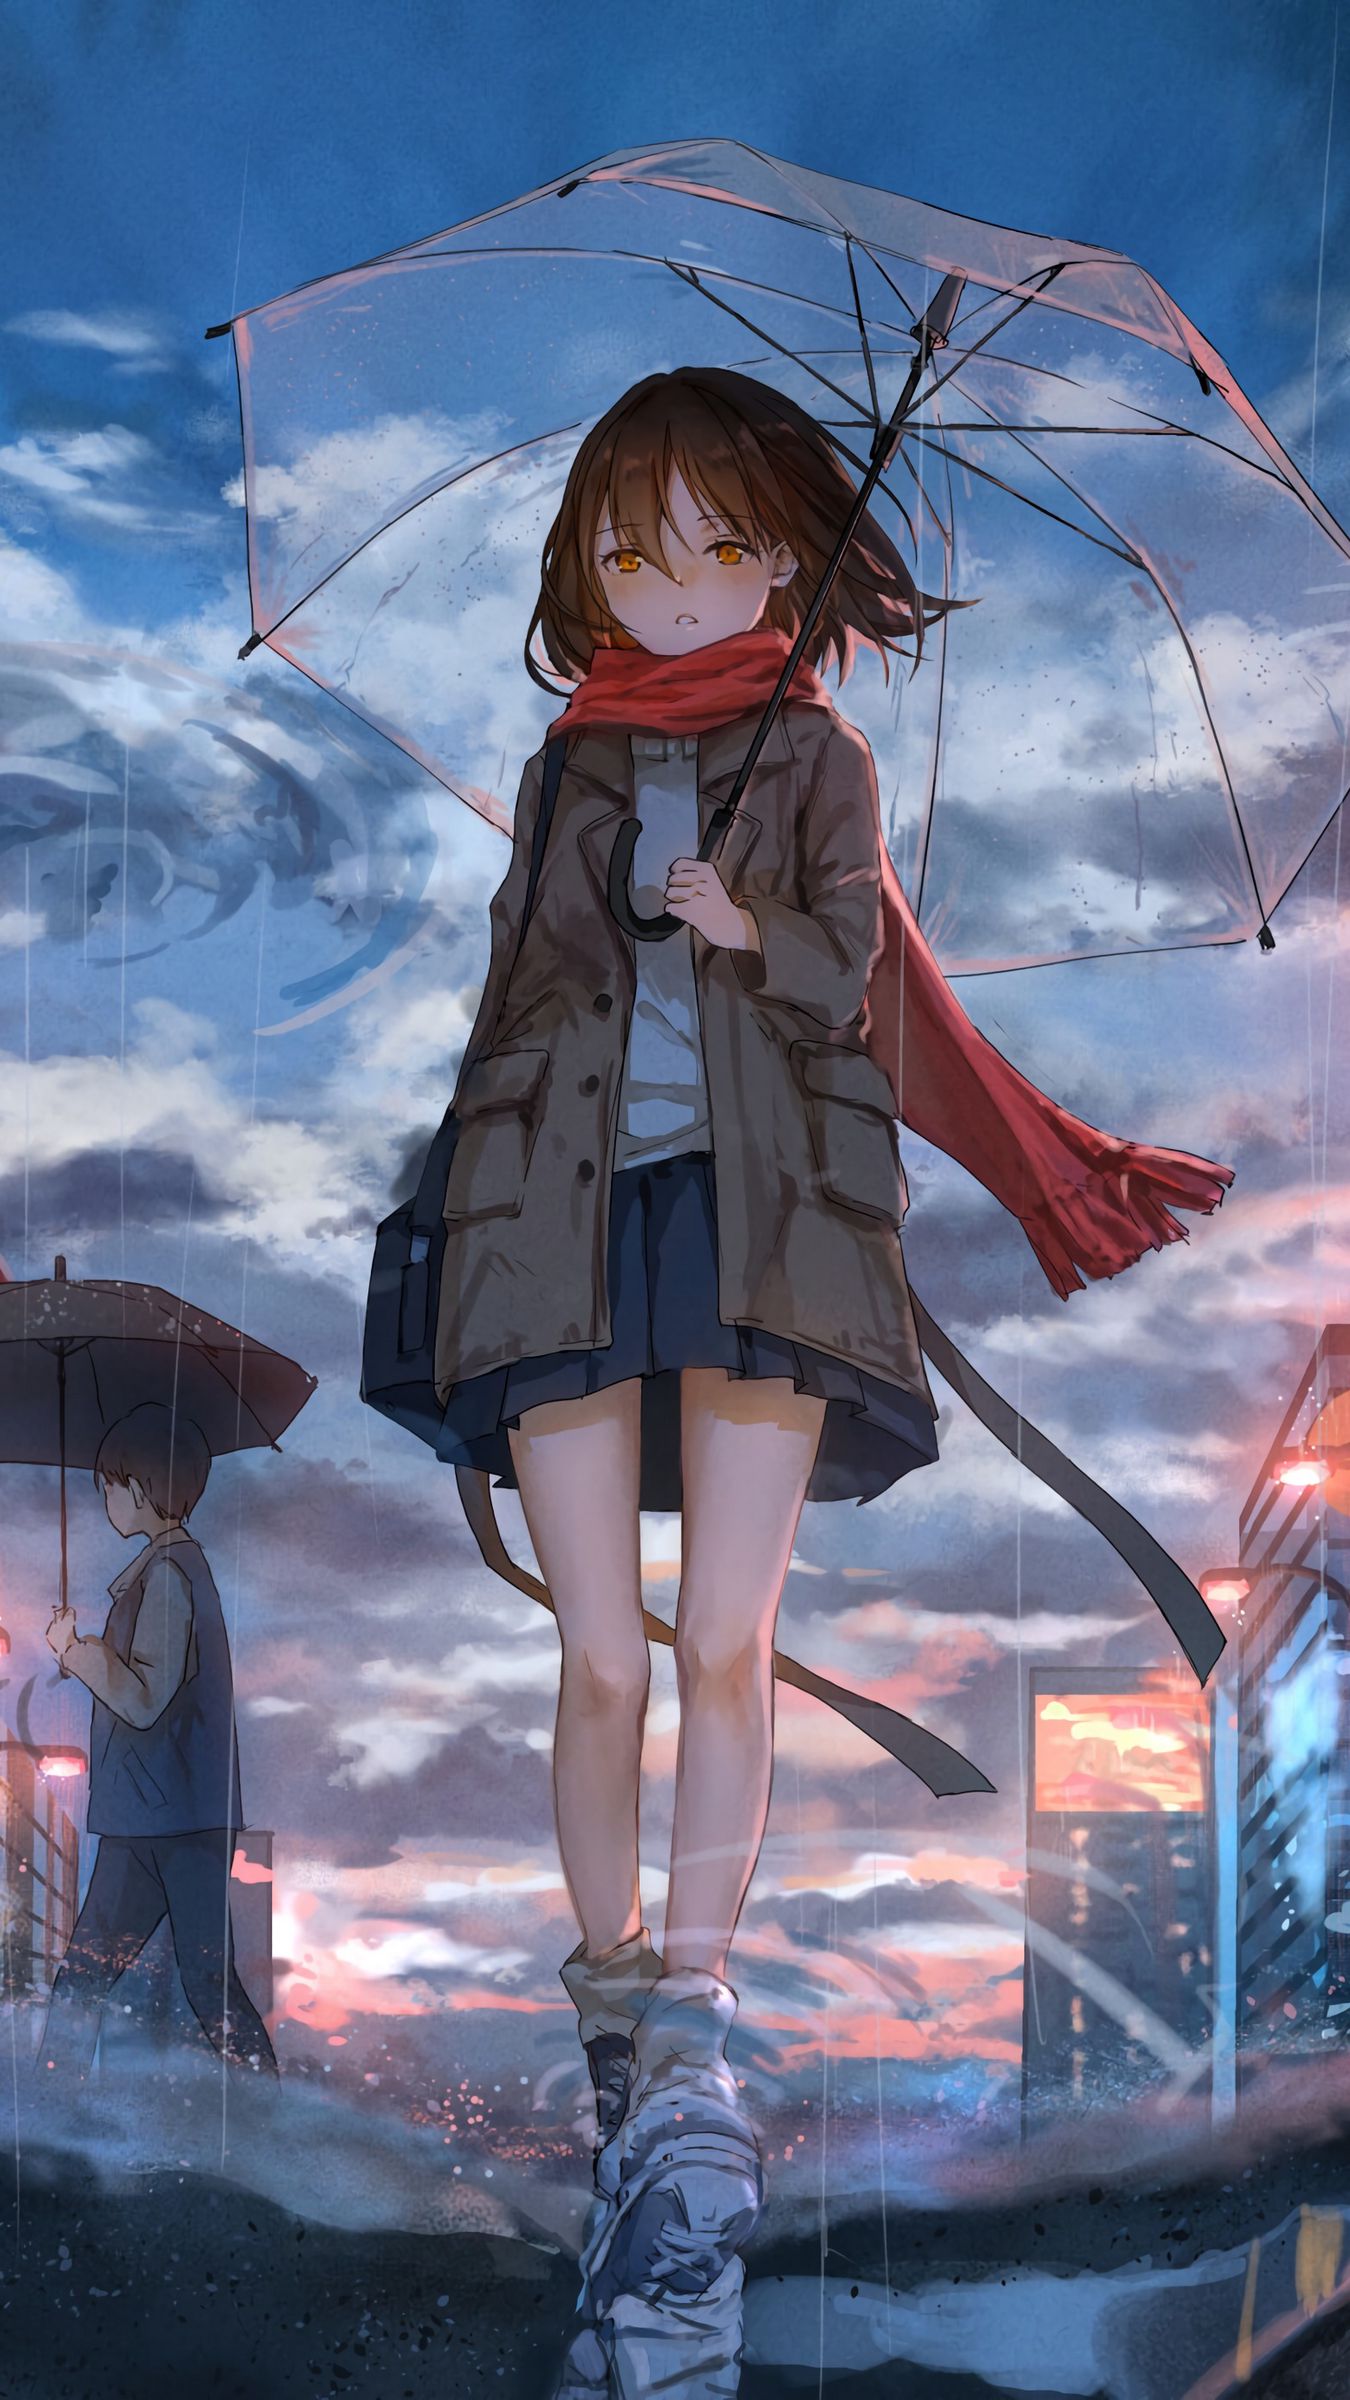 100+] Anime Rain Wallpapers | Wallpapers.com